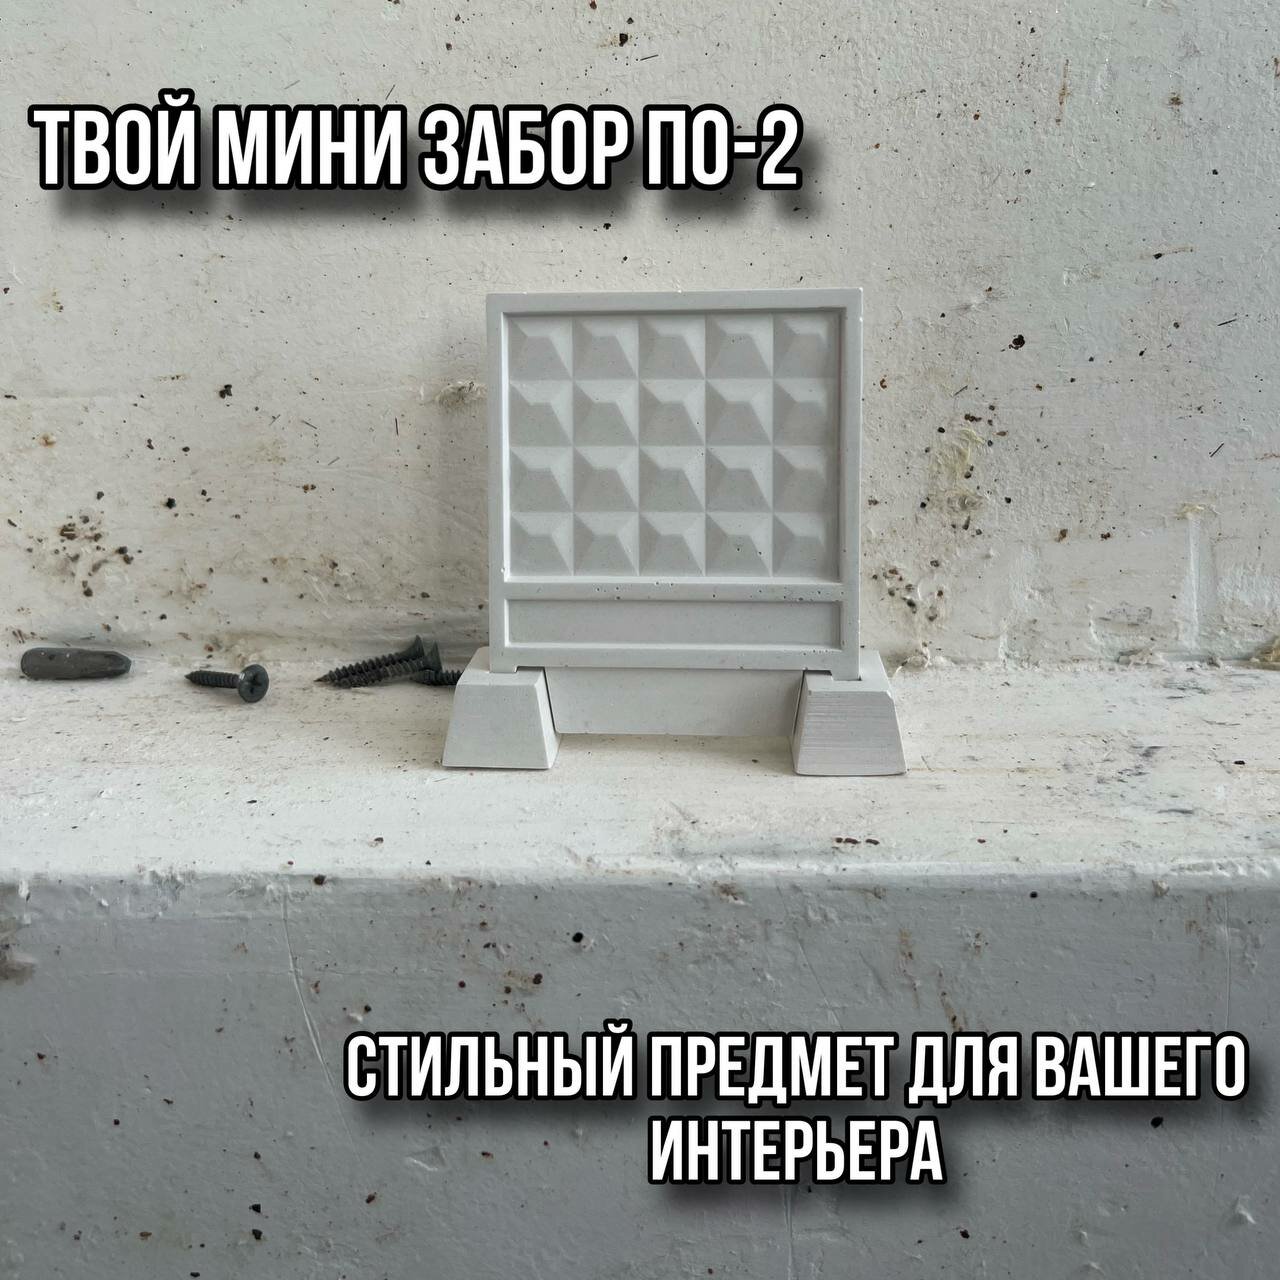 Сувенир забор ПО-2 мини ( статуэтка из гипсобетона)